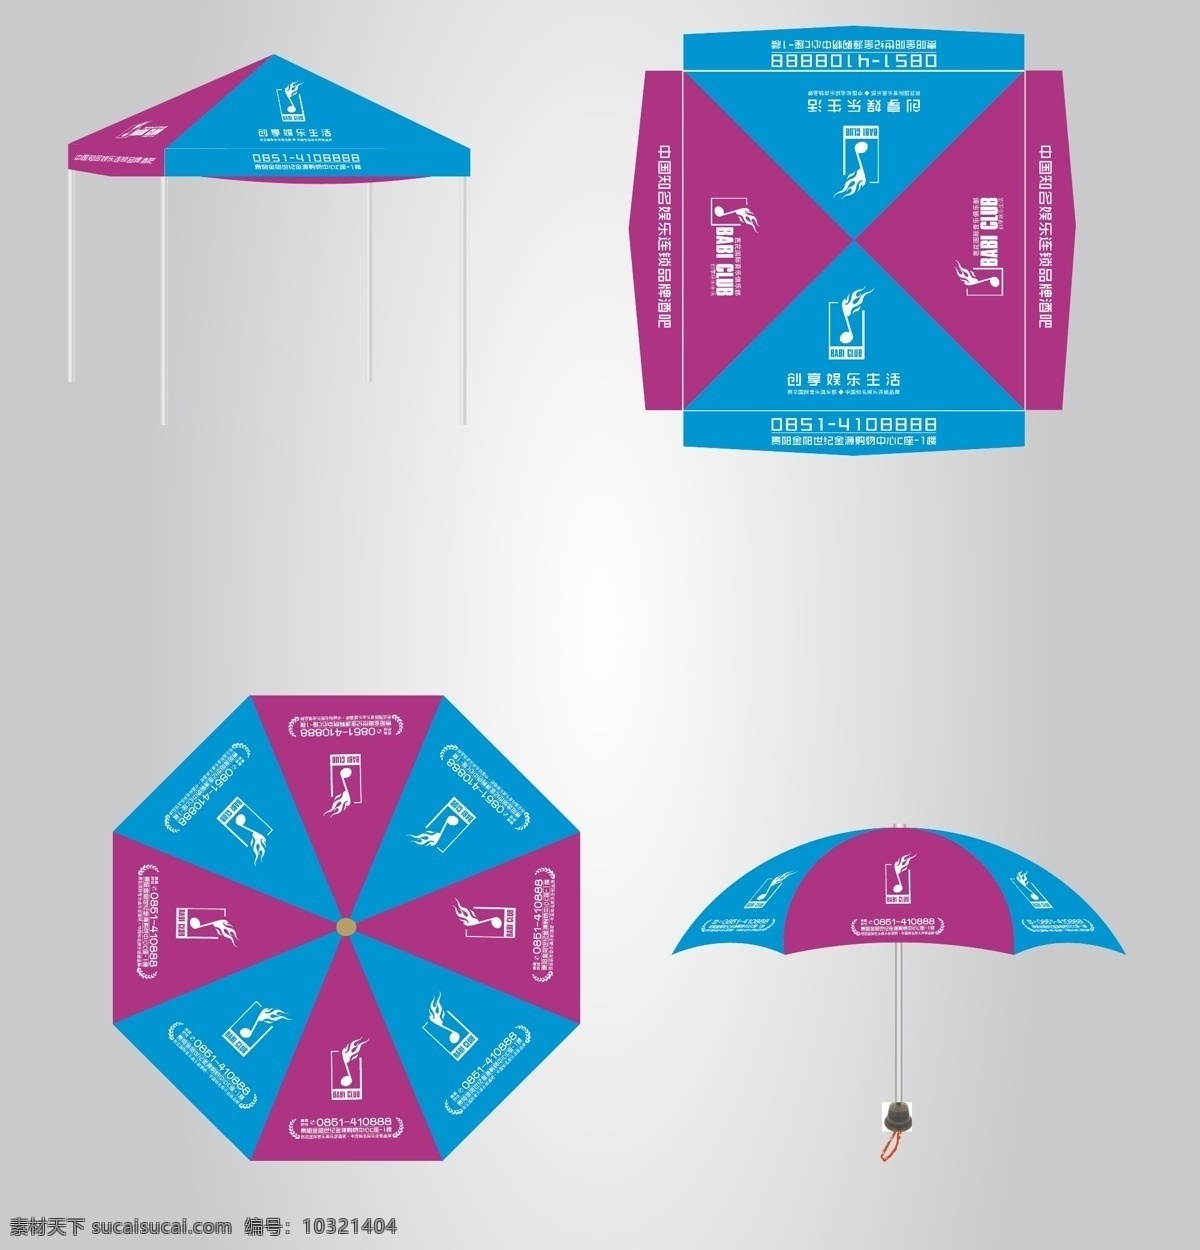 广告雨伞 伞 雨伞 广告伞 太阳伞 雨棚 雨篷 遮雨棚 避雨 推拉伞 酒吧广告伞 雨伞设计 雨伞模板 雨伞元素 广告伞模板 广告设计模板 矢量